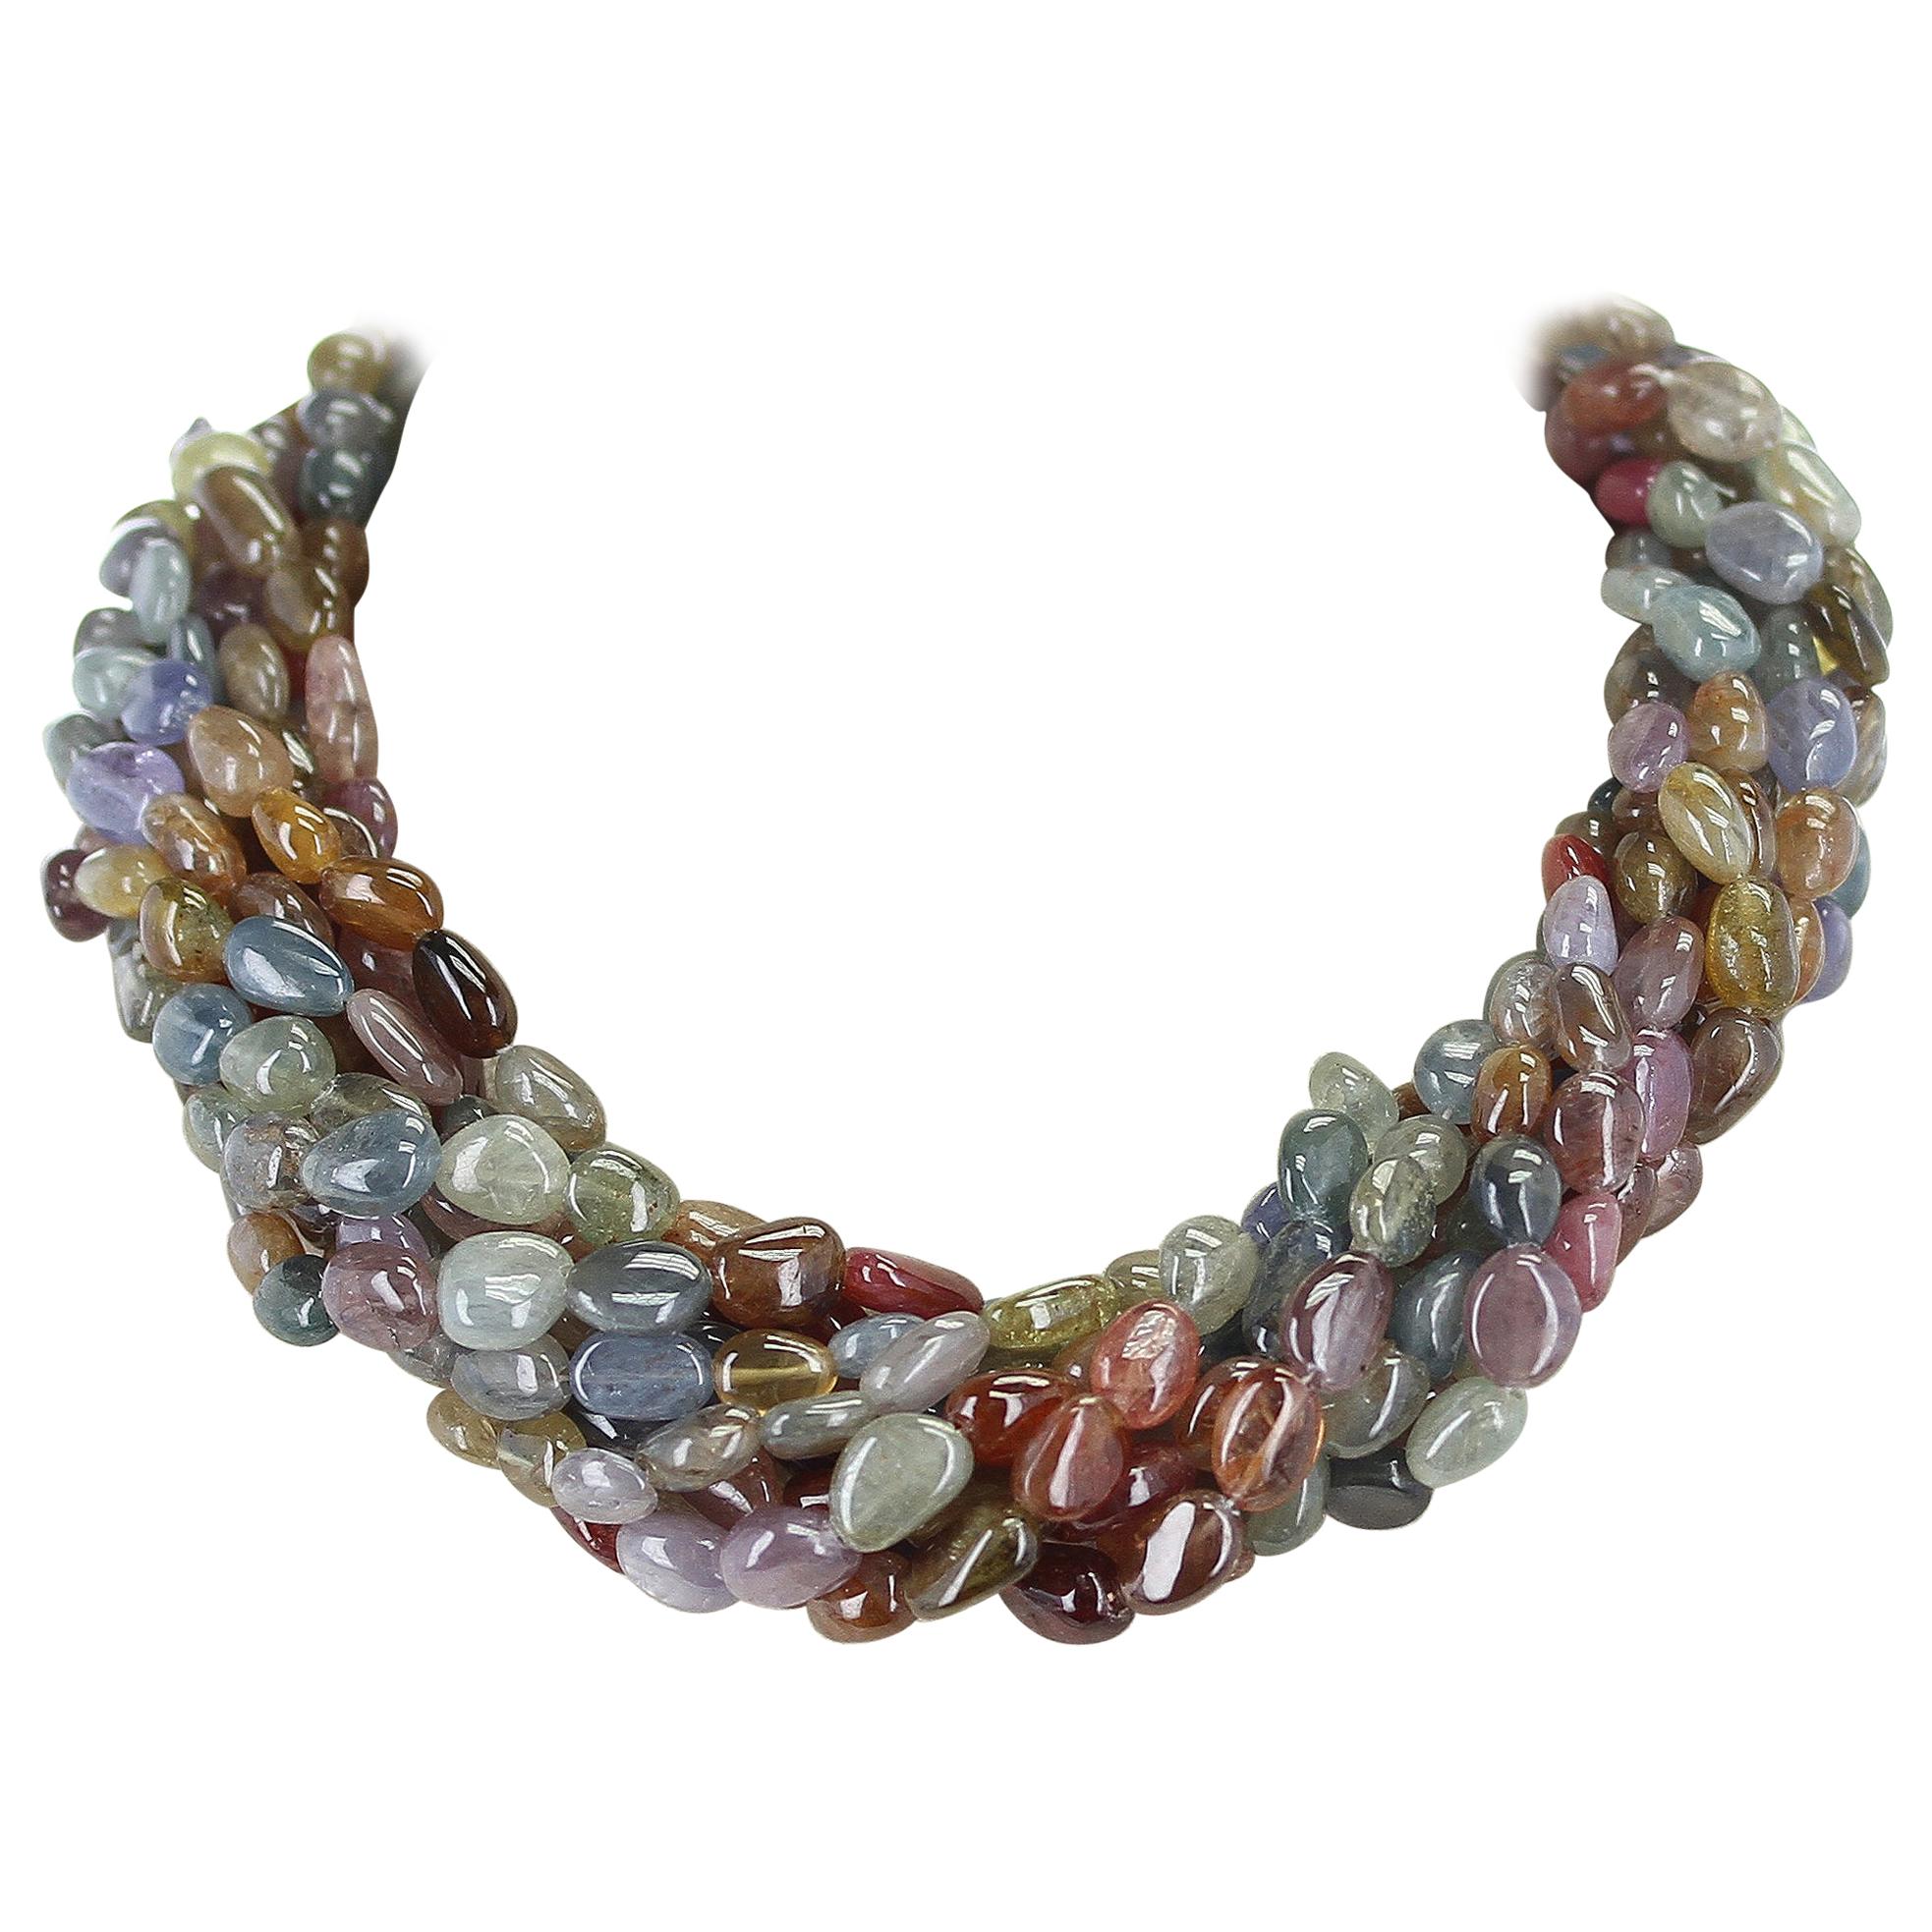 1460 Karat echte & natürliche erdfarbene mehrfarbige gesprenkelte Perlen-Choker-Halskette mit gesprenkelten Perlen im Angebot